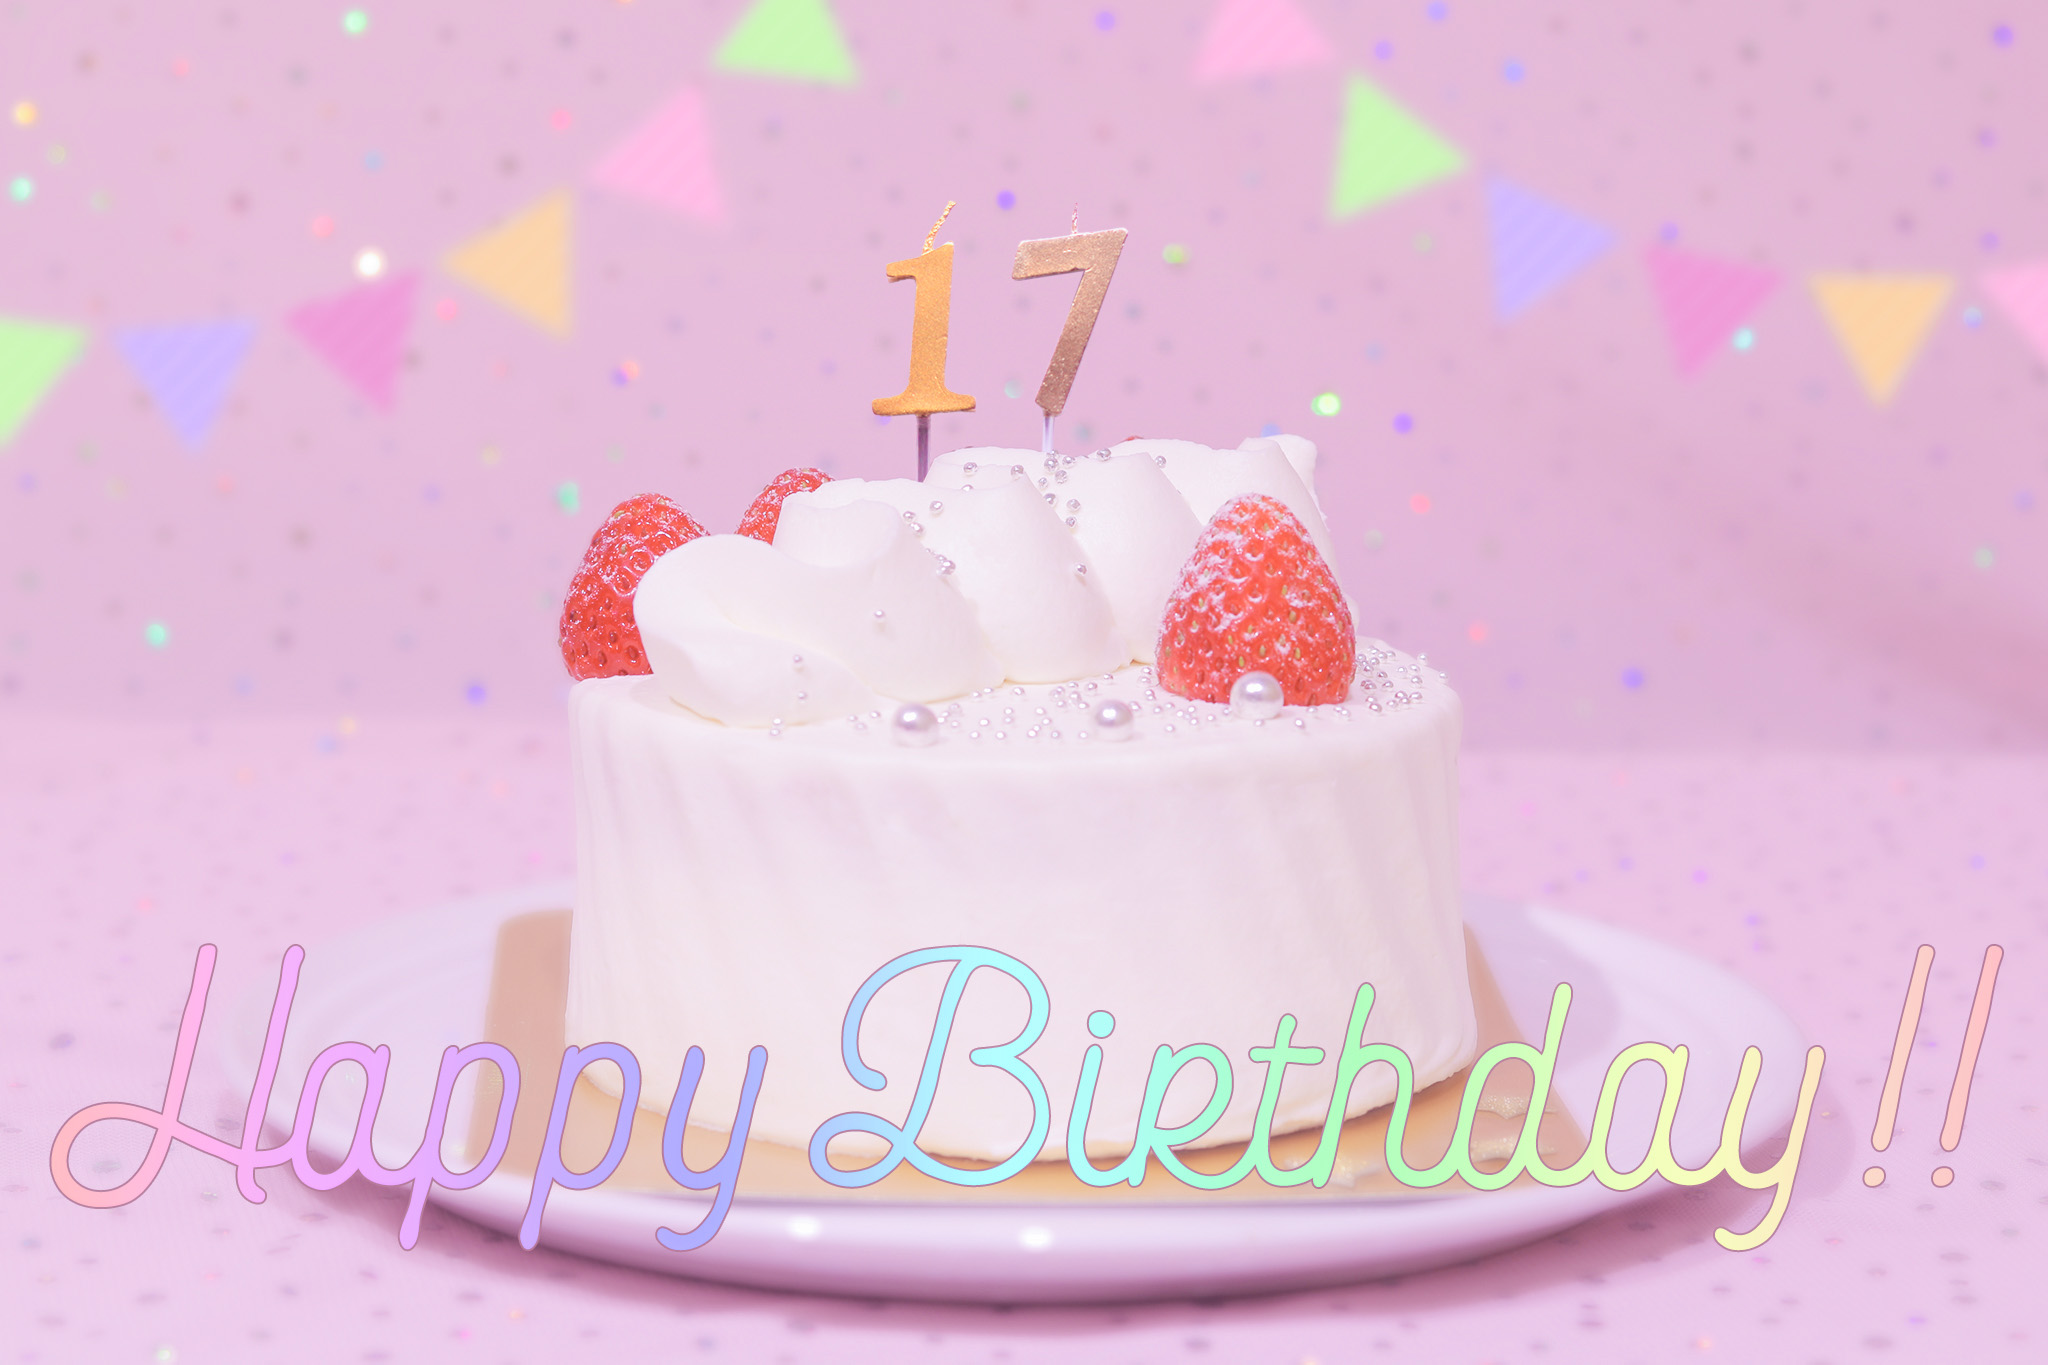 かわいい誕生日画像 ケーキとパステルカラーで可愛くお祝い 17歳編 のフリー画像 おしゃれなフリー写真素材 Girly Drop